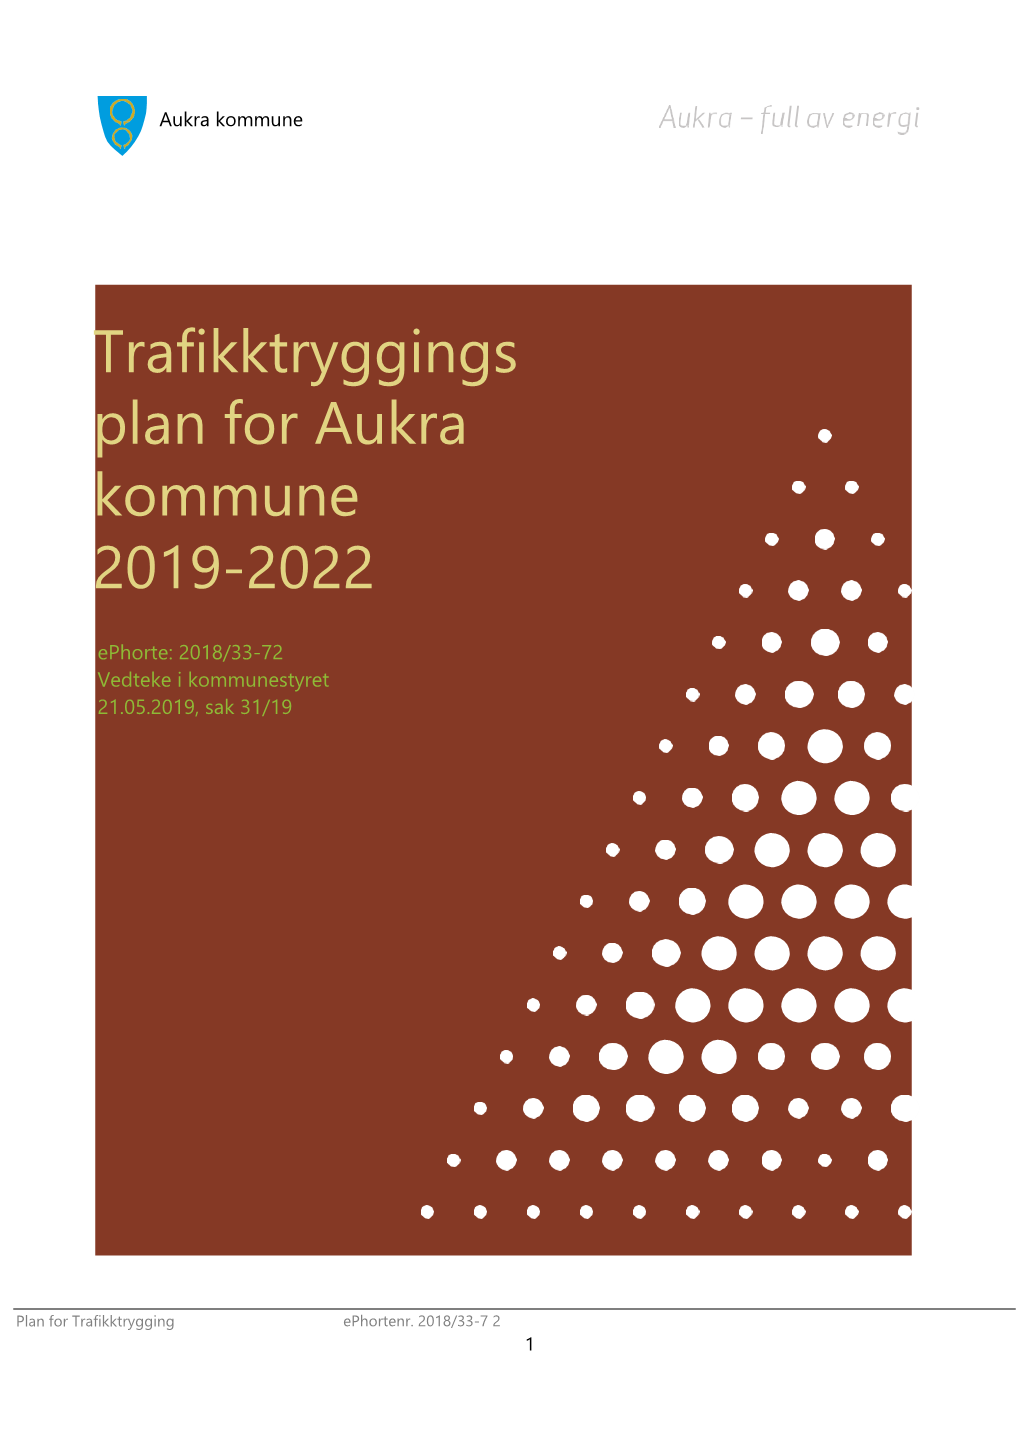 Trafikktryggings Plan for Aukra Kommune 2019-2022